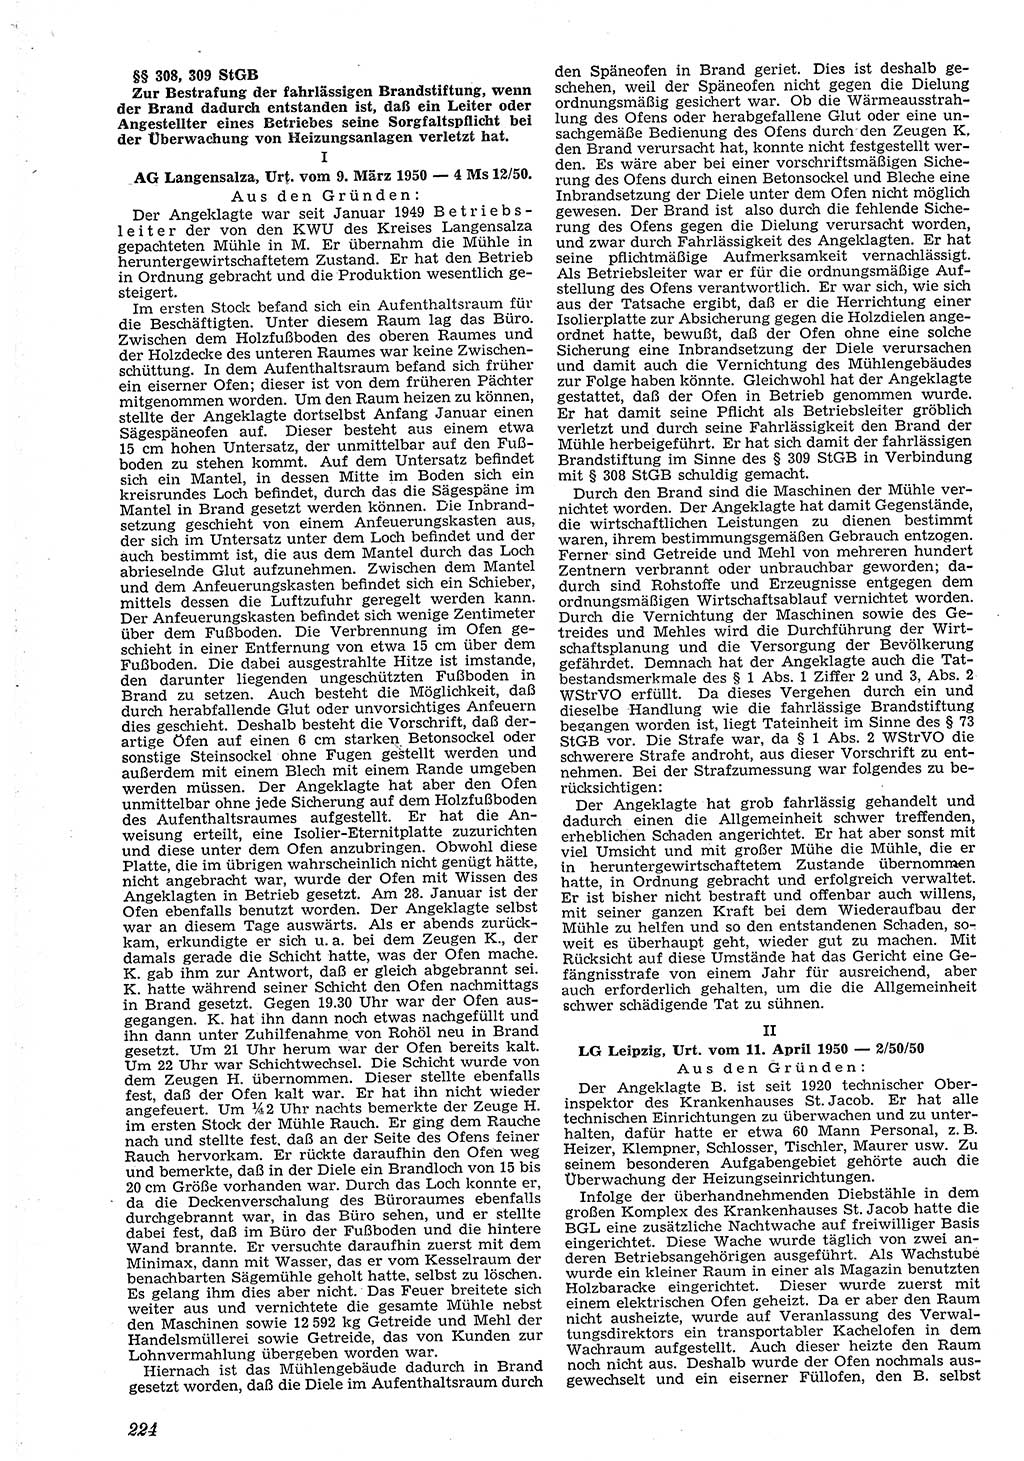 Neue Justiz (NJ), Zeitschrift für Recht und Rechtswissenschaft [Deutsche Demokratische Republik (DDR)], 4. Jahrgang 1950, Seite 224 (NJ DDR 1950, S. 224)